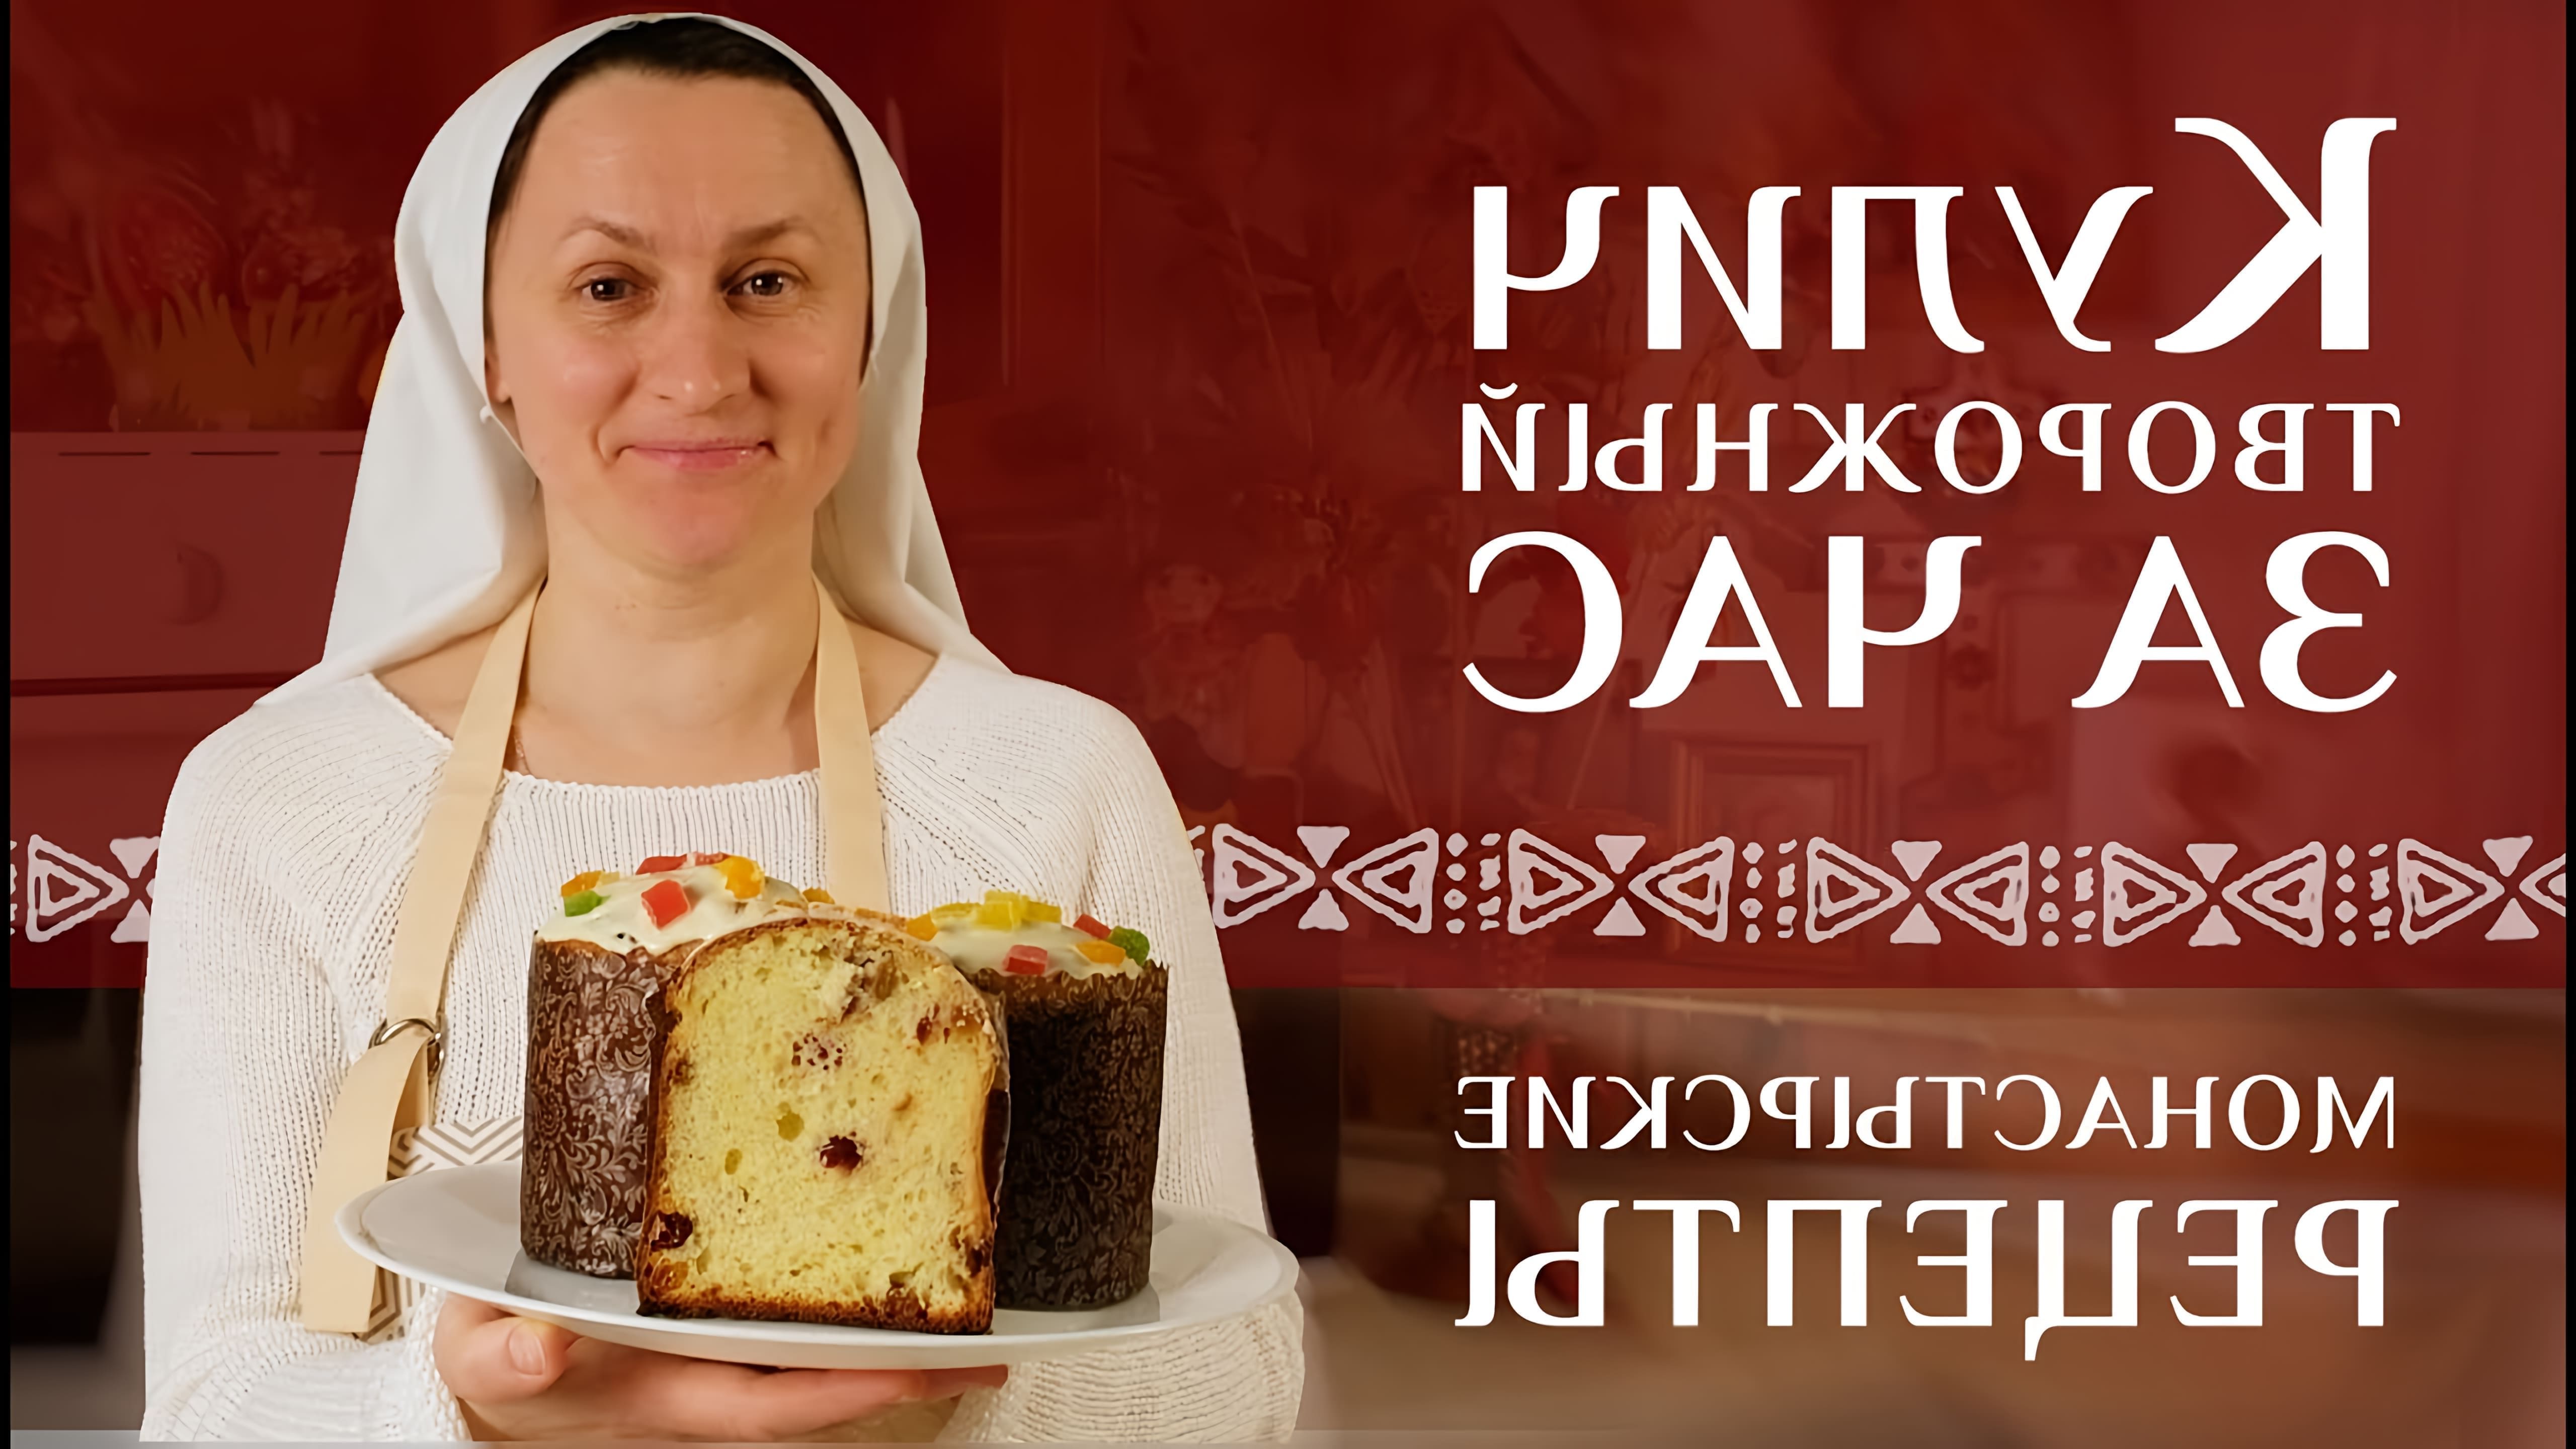 В этом видео сестра Татьяна делится рецептом творожного кулича, который можно приготовить за час